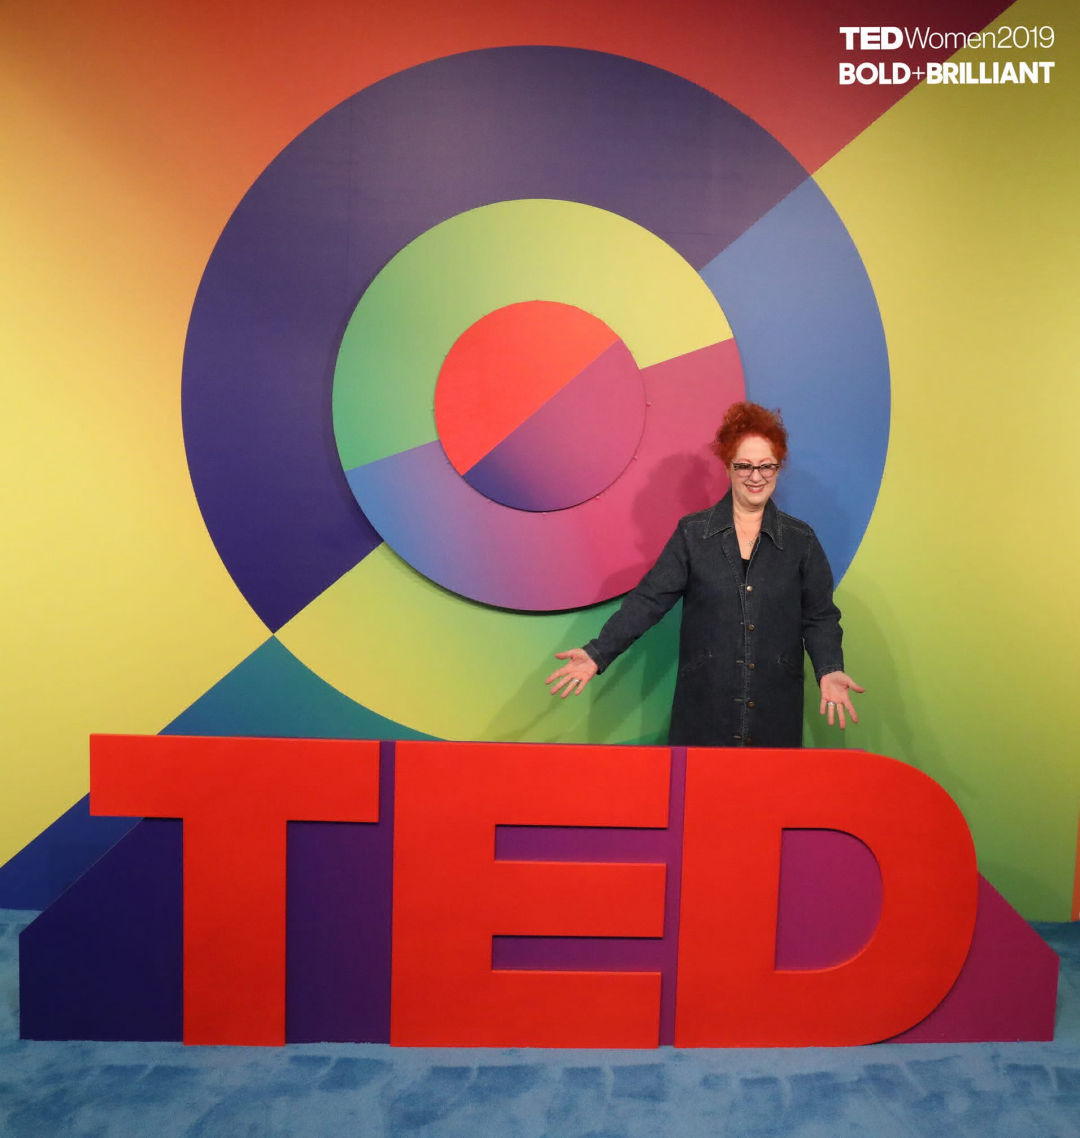 Donna @TEDWomen